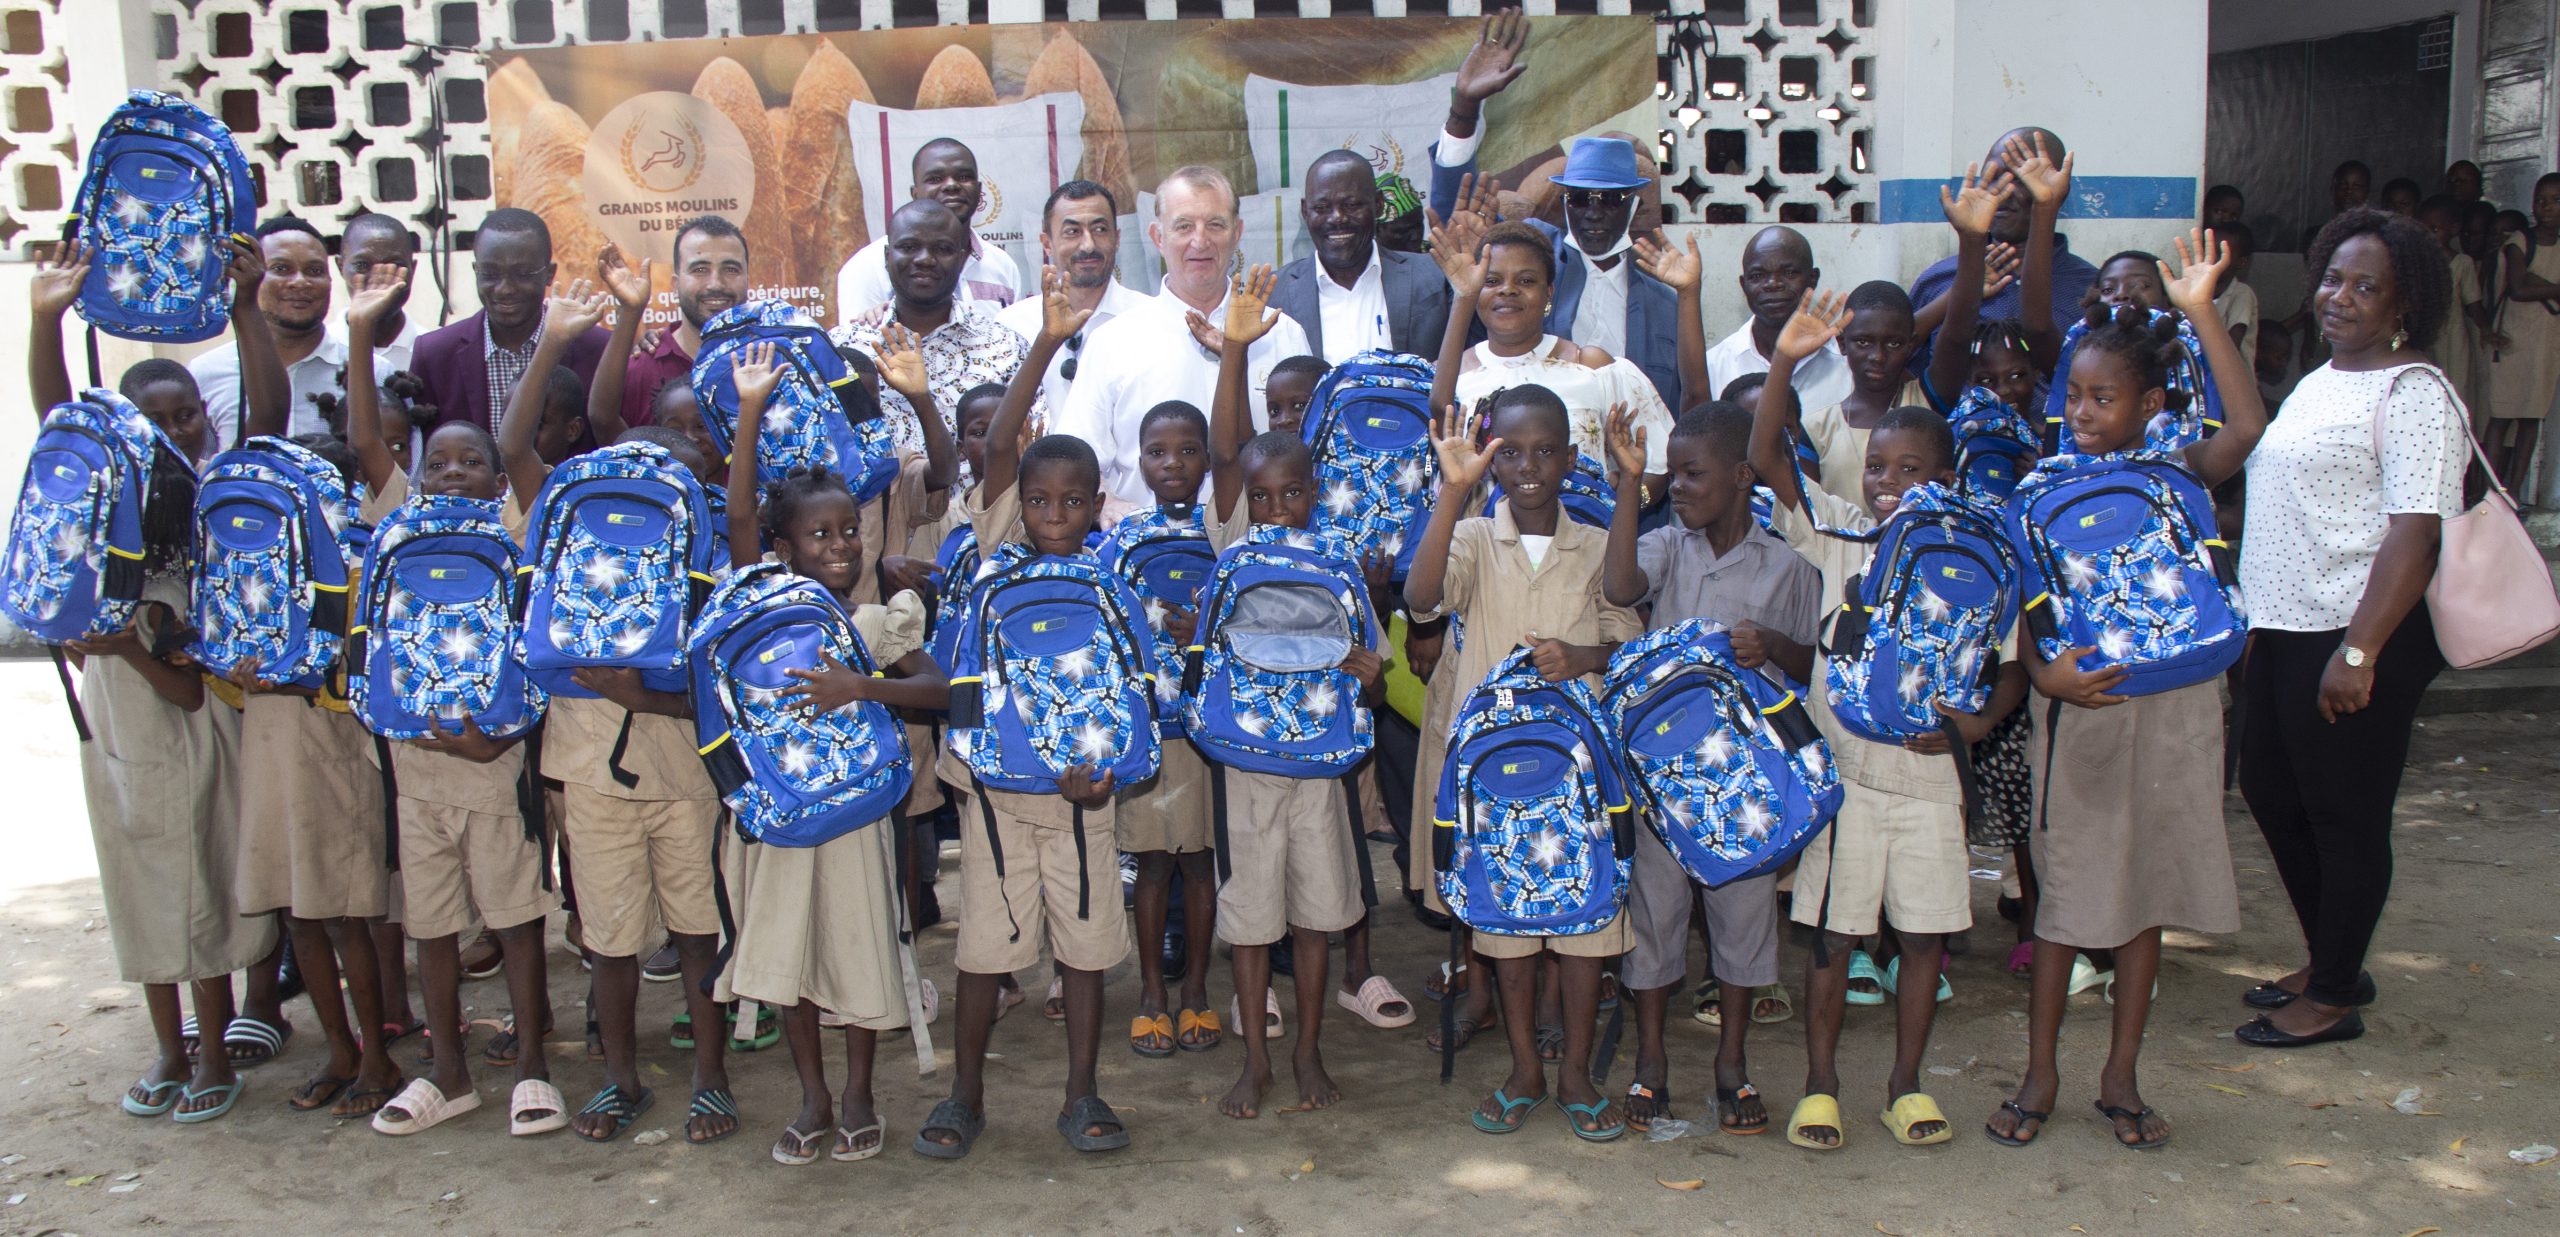 Soutien à l’éducation à la base : Gmb offre des kits scolaires à l’Epp Fifadji-Houto